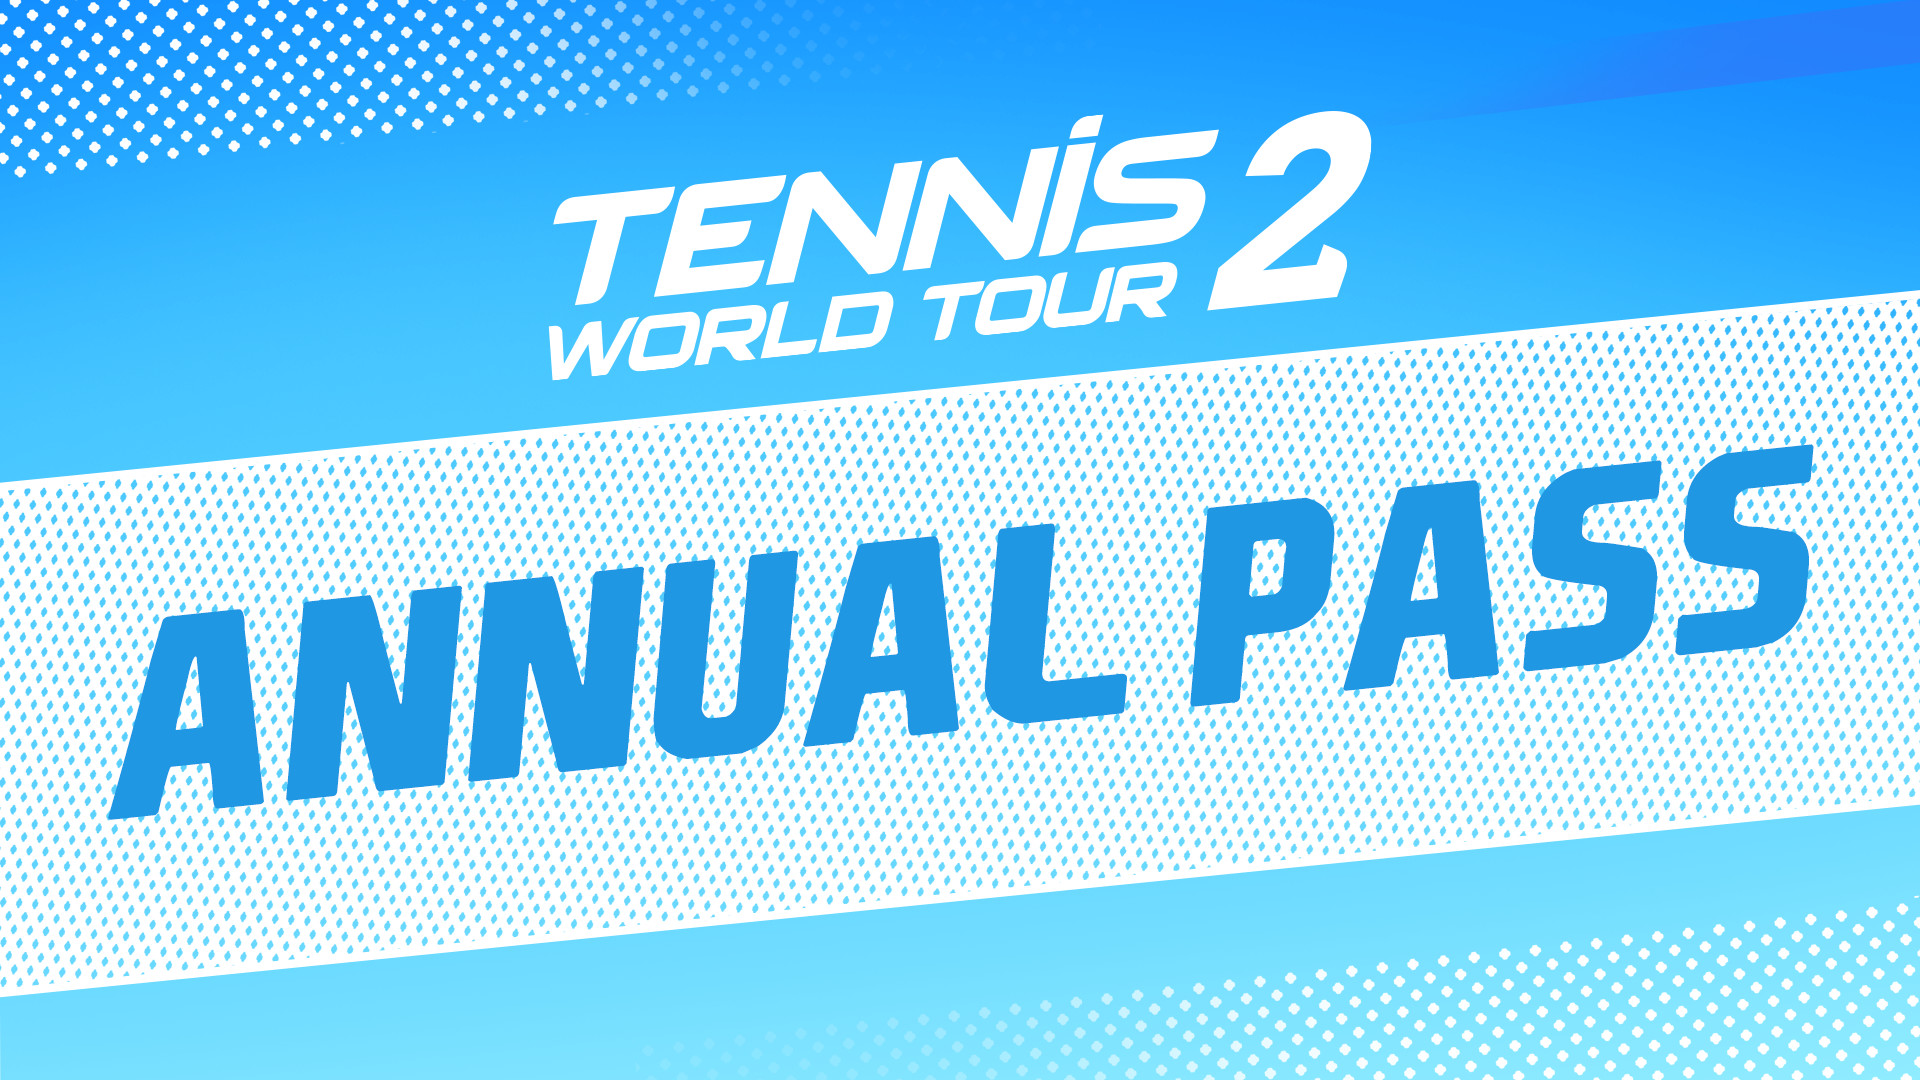 Tennis World Tour 2 - Annual Pass DLC Steam CD Key, 7.23 usd